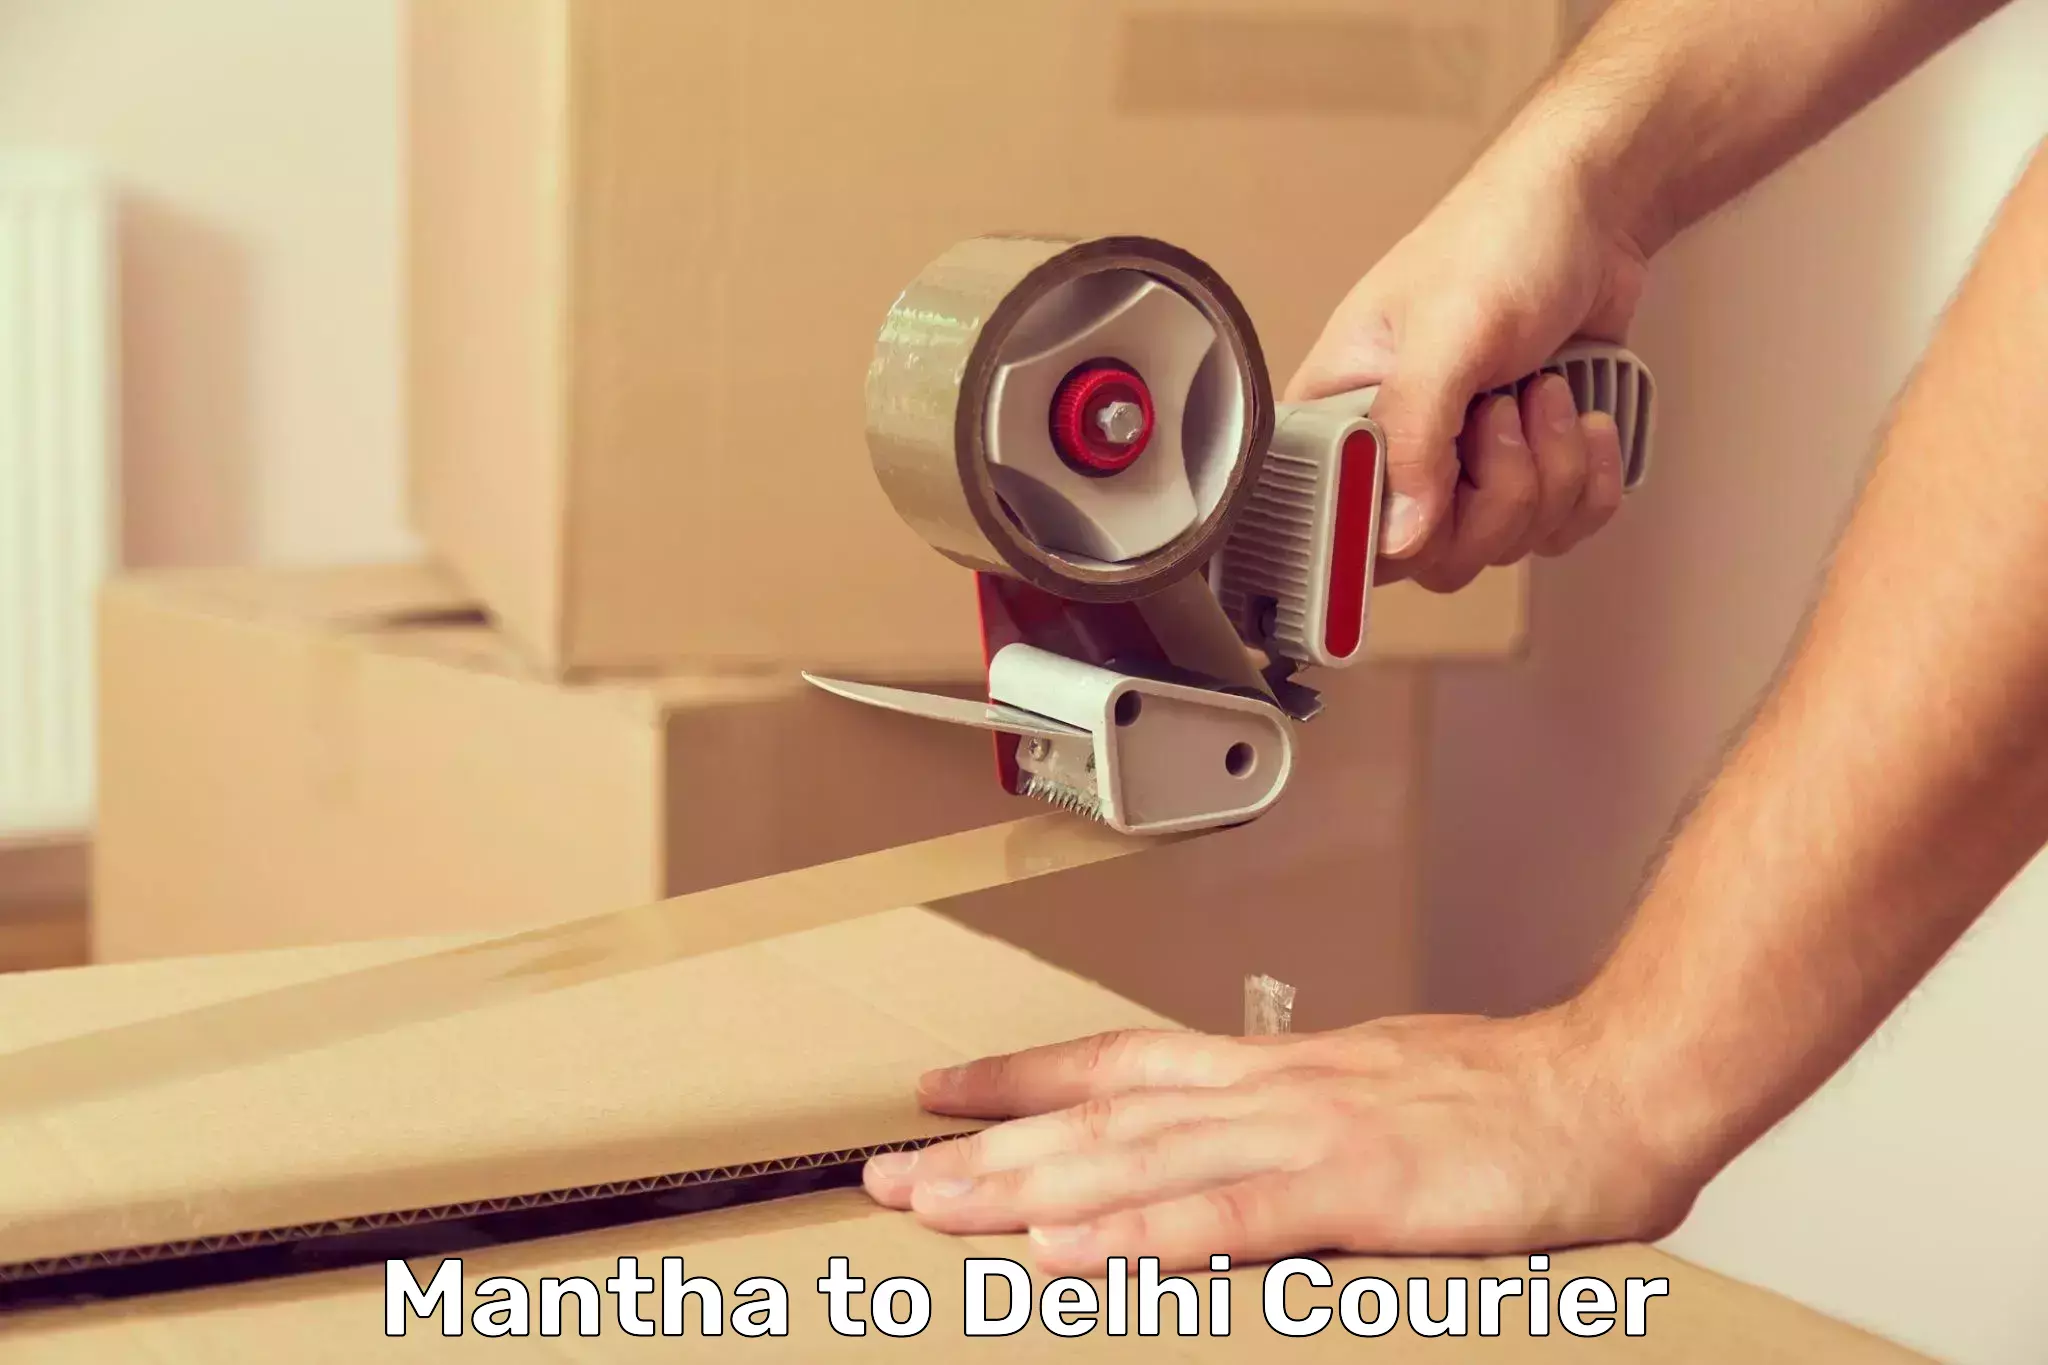 Courier service comparison Mantha to East Delhi